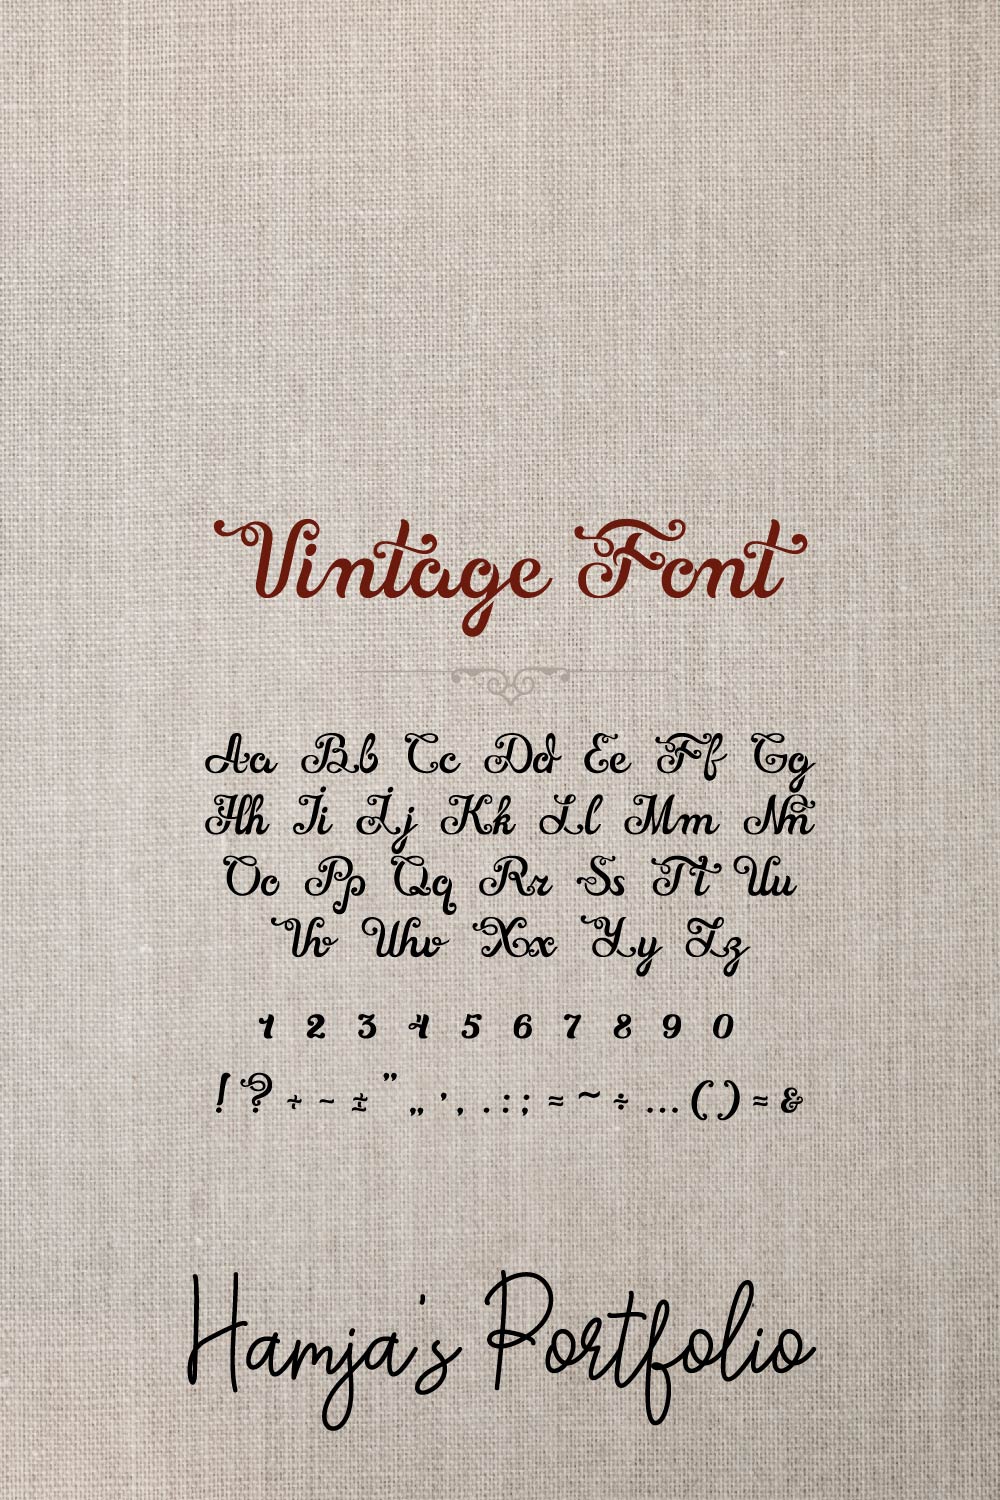 Vintage Font Vector Svg pinterest preview image.